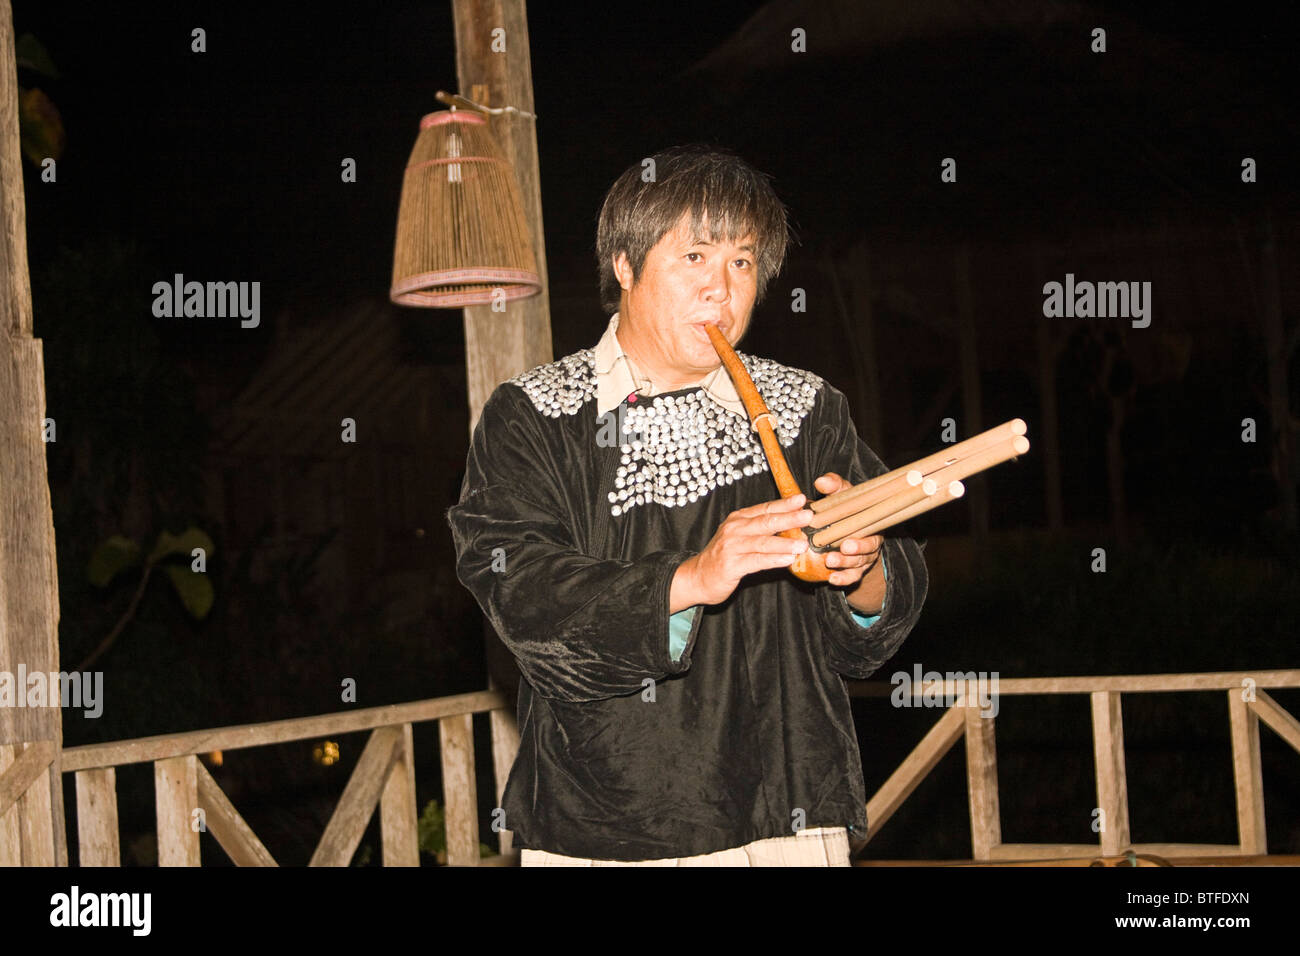 L'homme de la tribu Lisu chanson joue sur les conditions de la flûte. Région de Chiang Mai, dans le nord de la Thaïlande. Banque D'Images